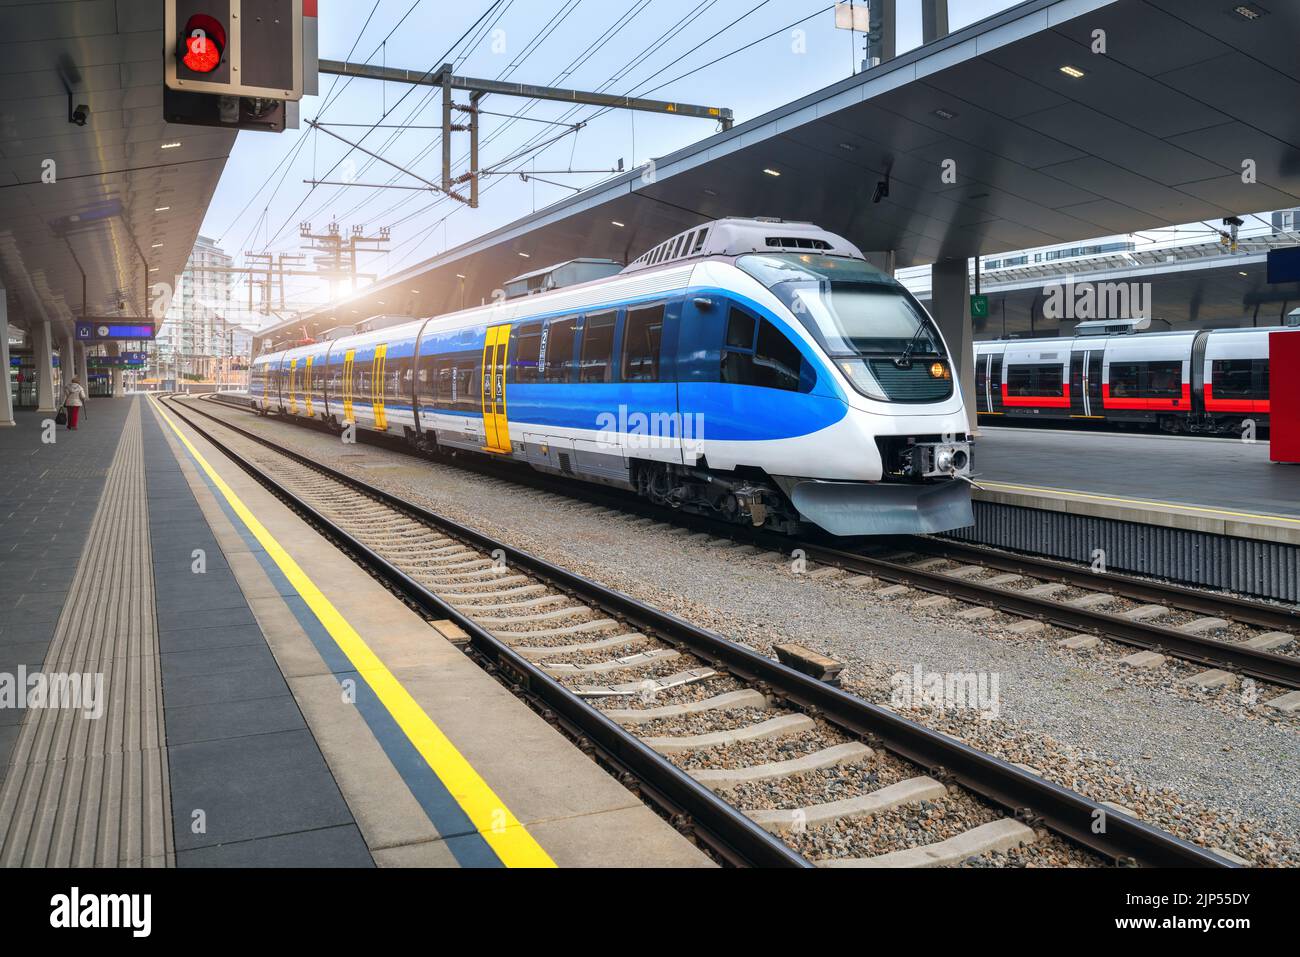 Hochgeschwindigkeitszug am Bahnhof bei Sonnenuntergang in Wien, Österreich. Schöner blauer moderner Intercity-Personenzug auf dem Bahnsteig. Eisenbahn Stockfoto